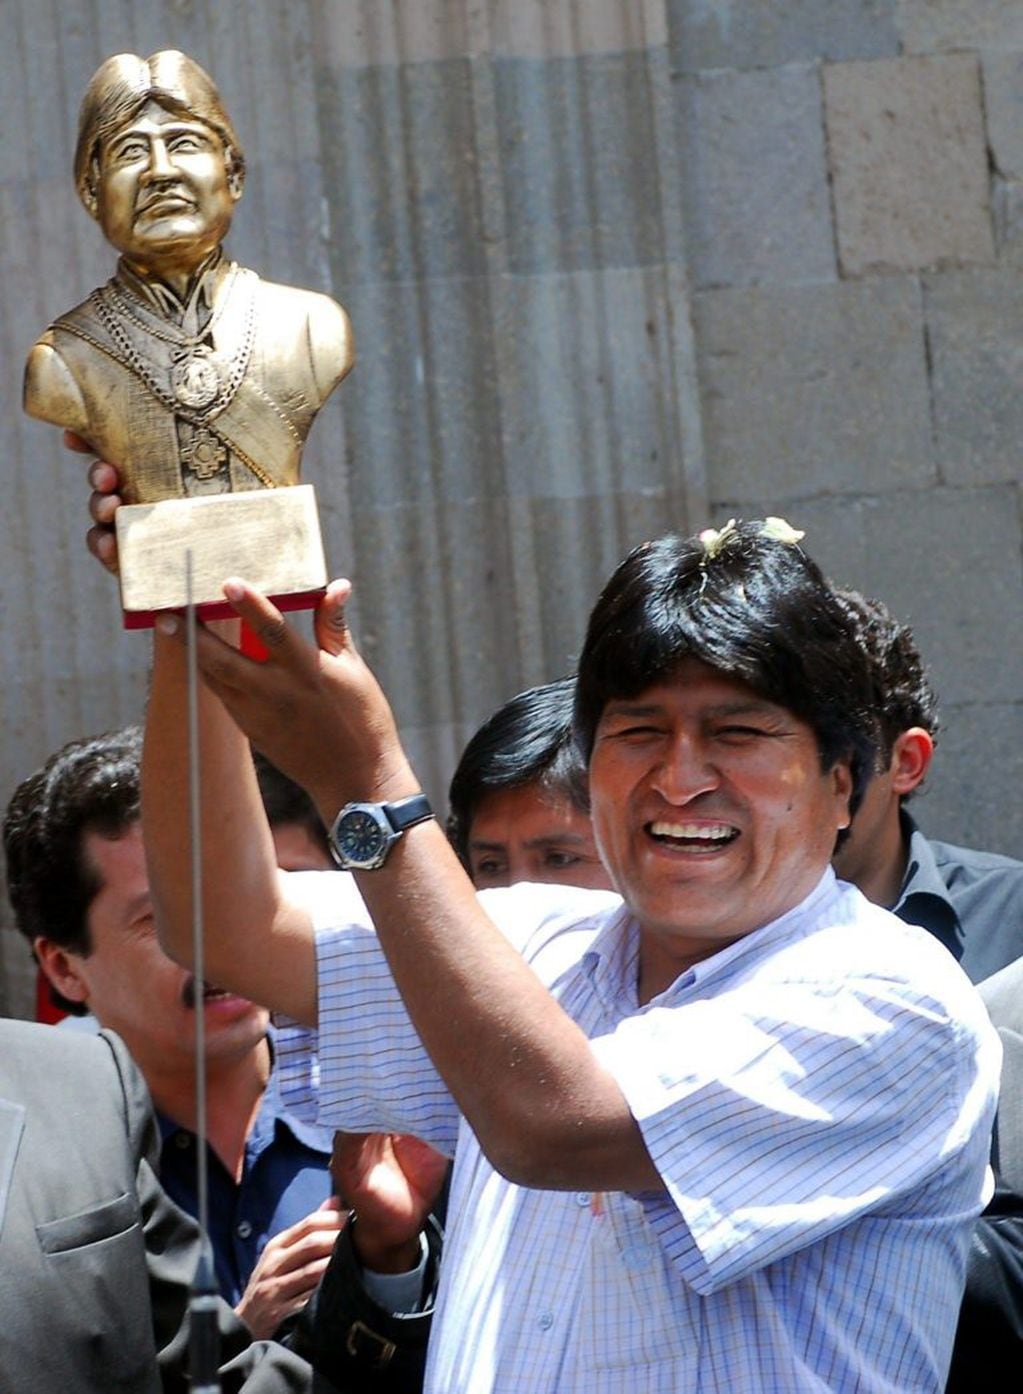 Fotografía de archivo fechada el 26 de octubre de 2006, que muestra al presidente de Bolivia, Evo Morales, mientras levanta una estatuilla con su busto, en La Paz (Bolivia). EFE/Martín Alipaz